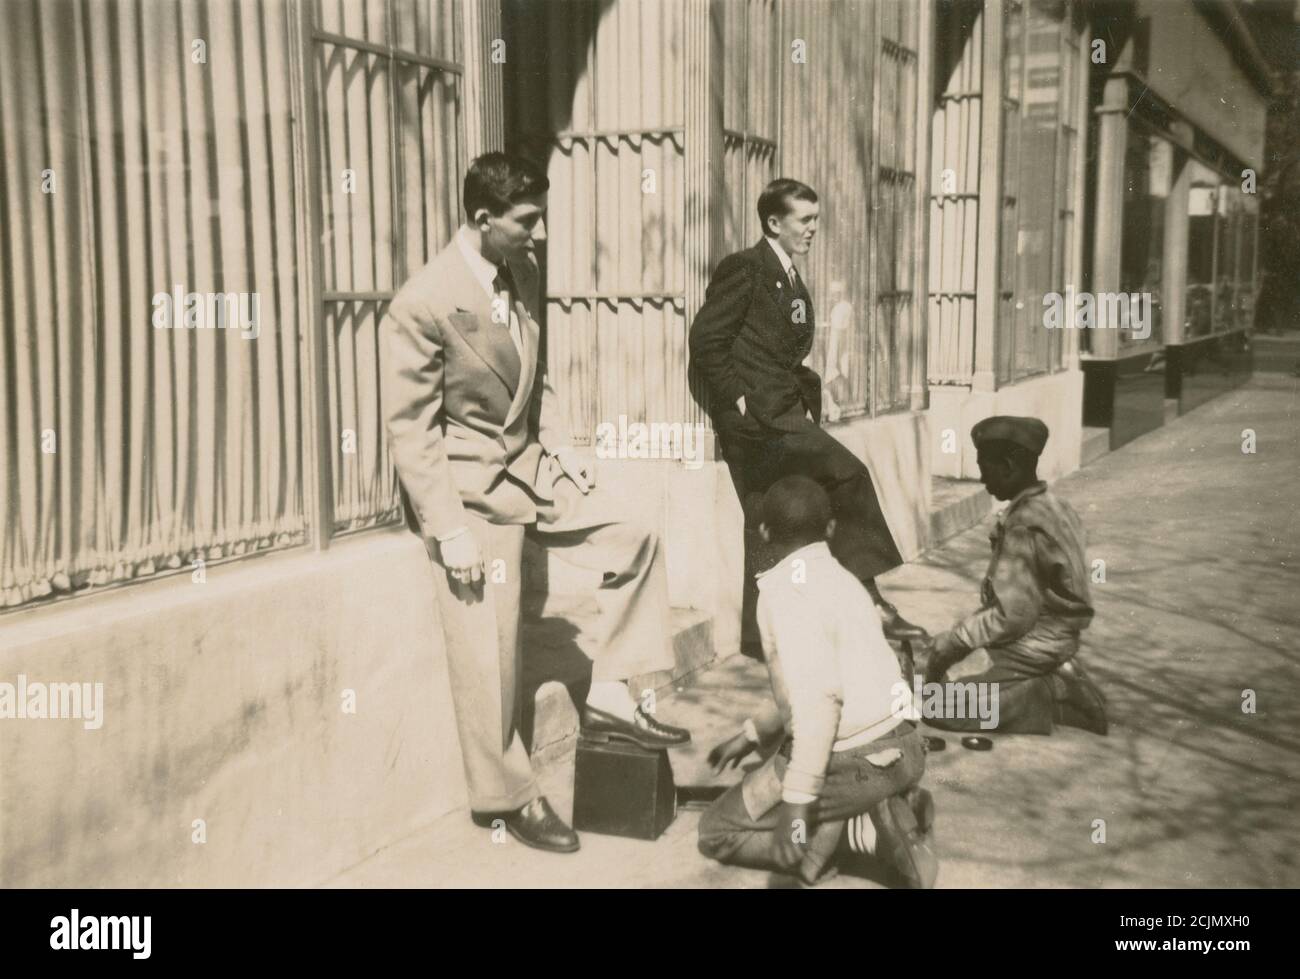 Antica fotografia c1940, due giovani uomini che hanno le loro scarpe brillate da ragazzi afroamericani su una strada cittadina. Posizione esatta sconosciuta, probabilmente New England, USA. FONTE: FOTOGRAFIA ORIGINALE Foto Stock